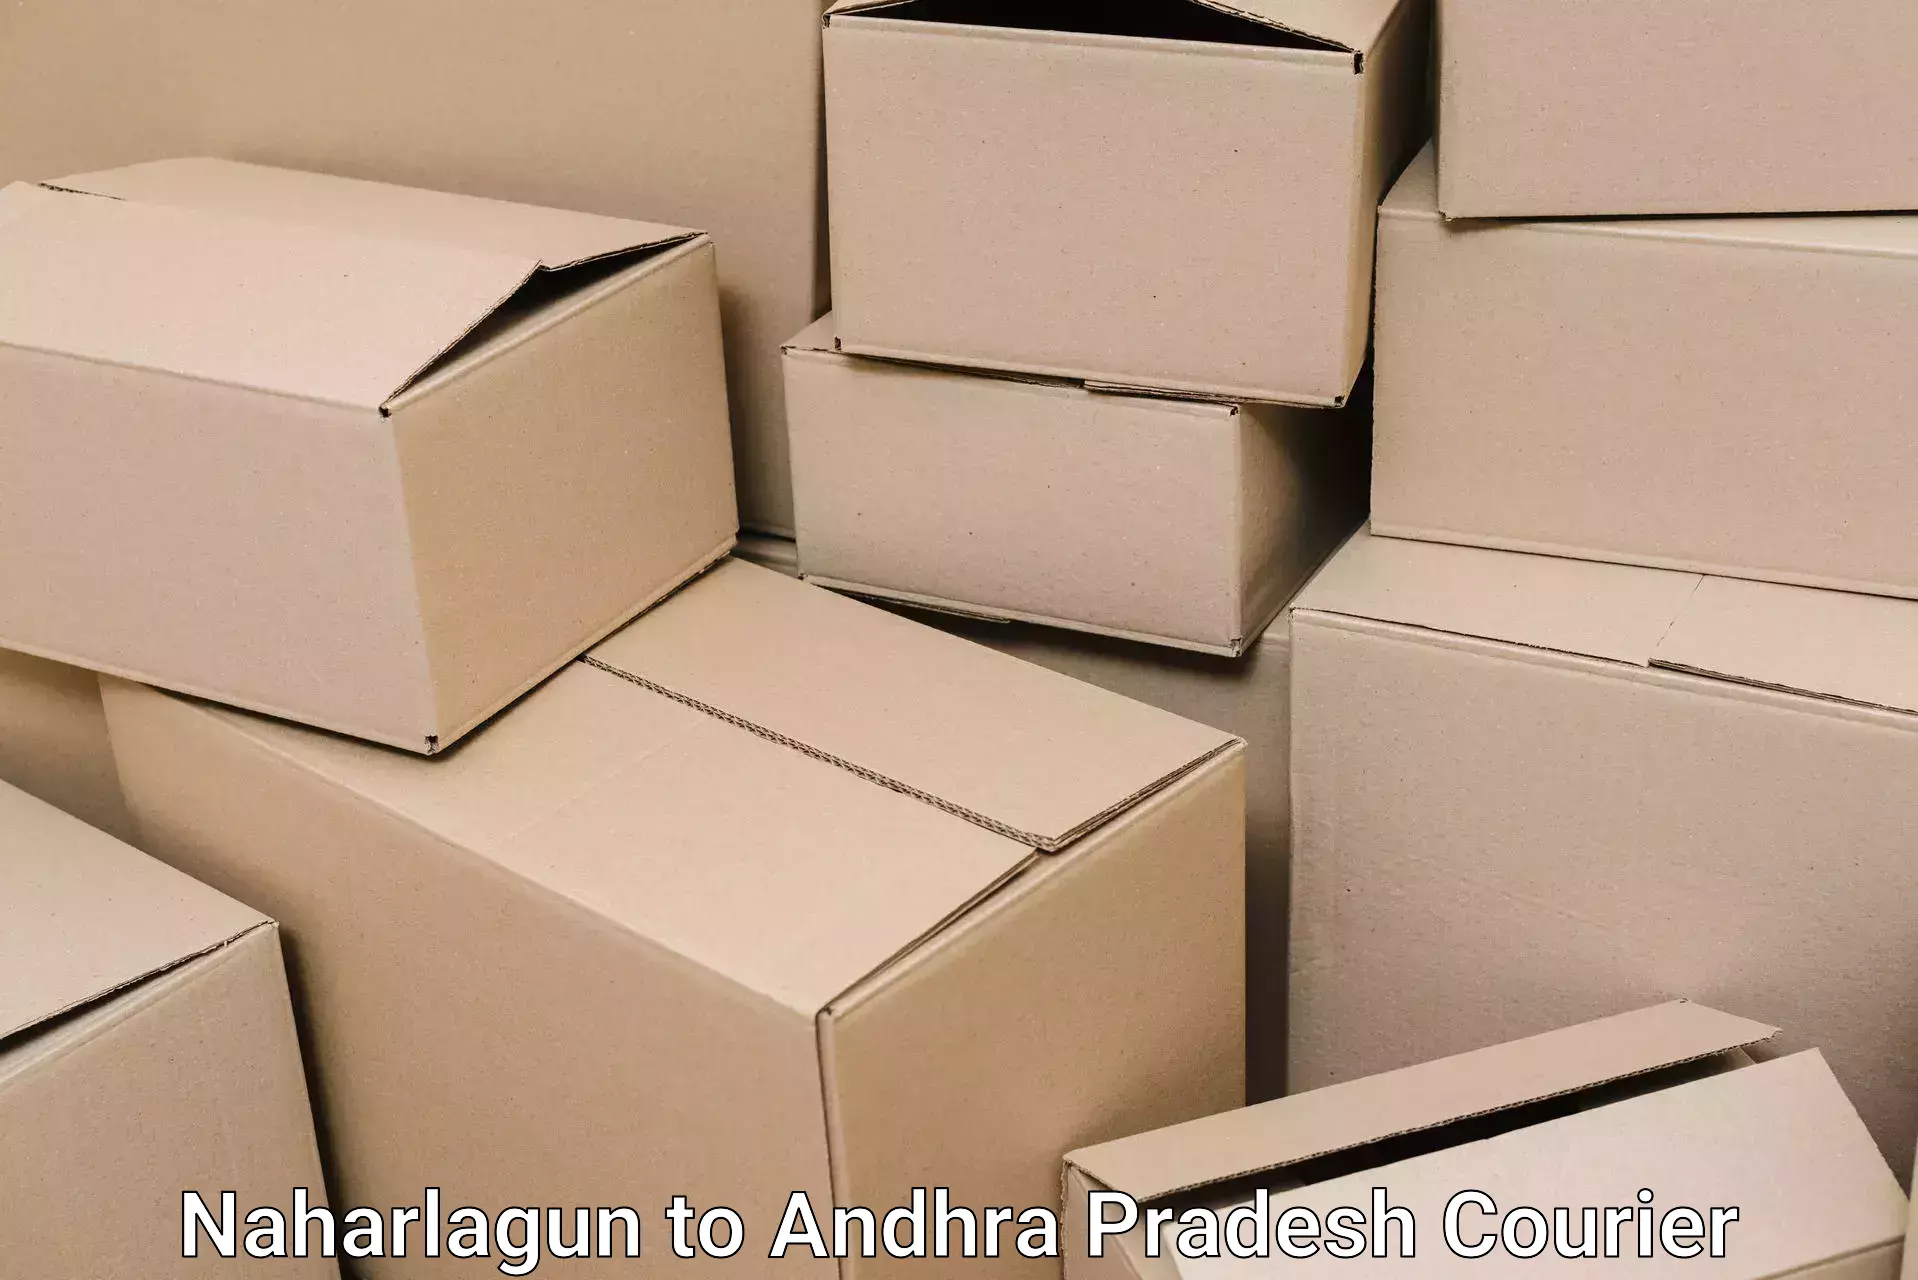 Full-service movers Naharlagun to Ramachandrapuram